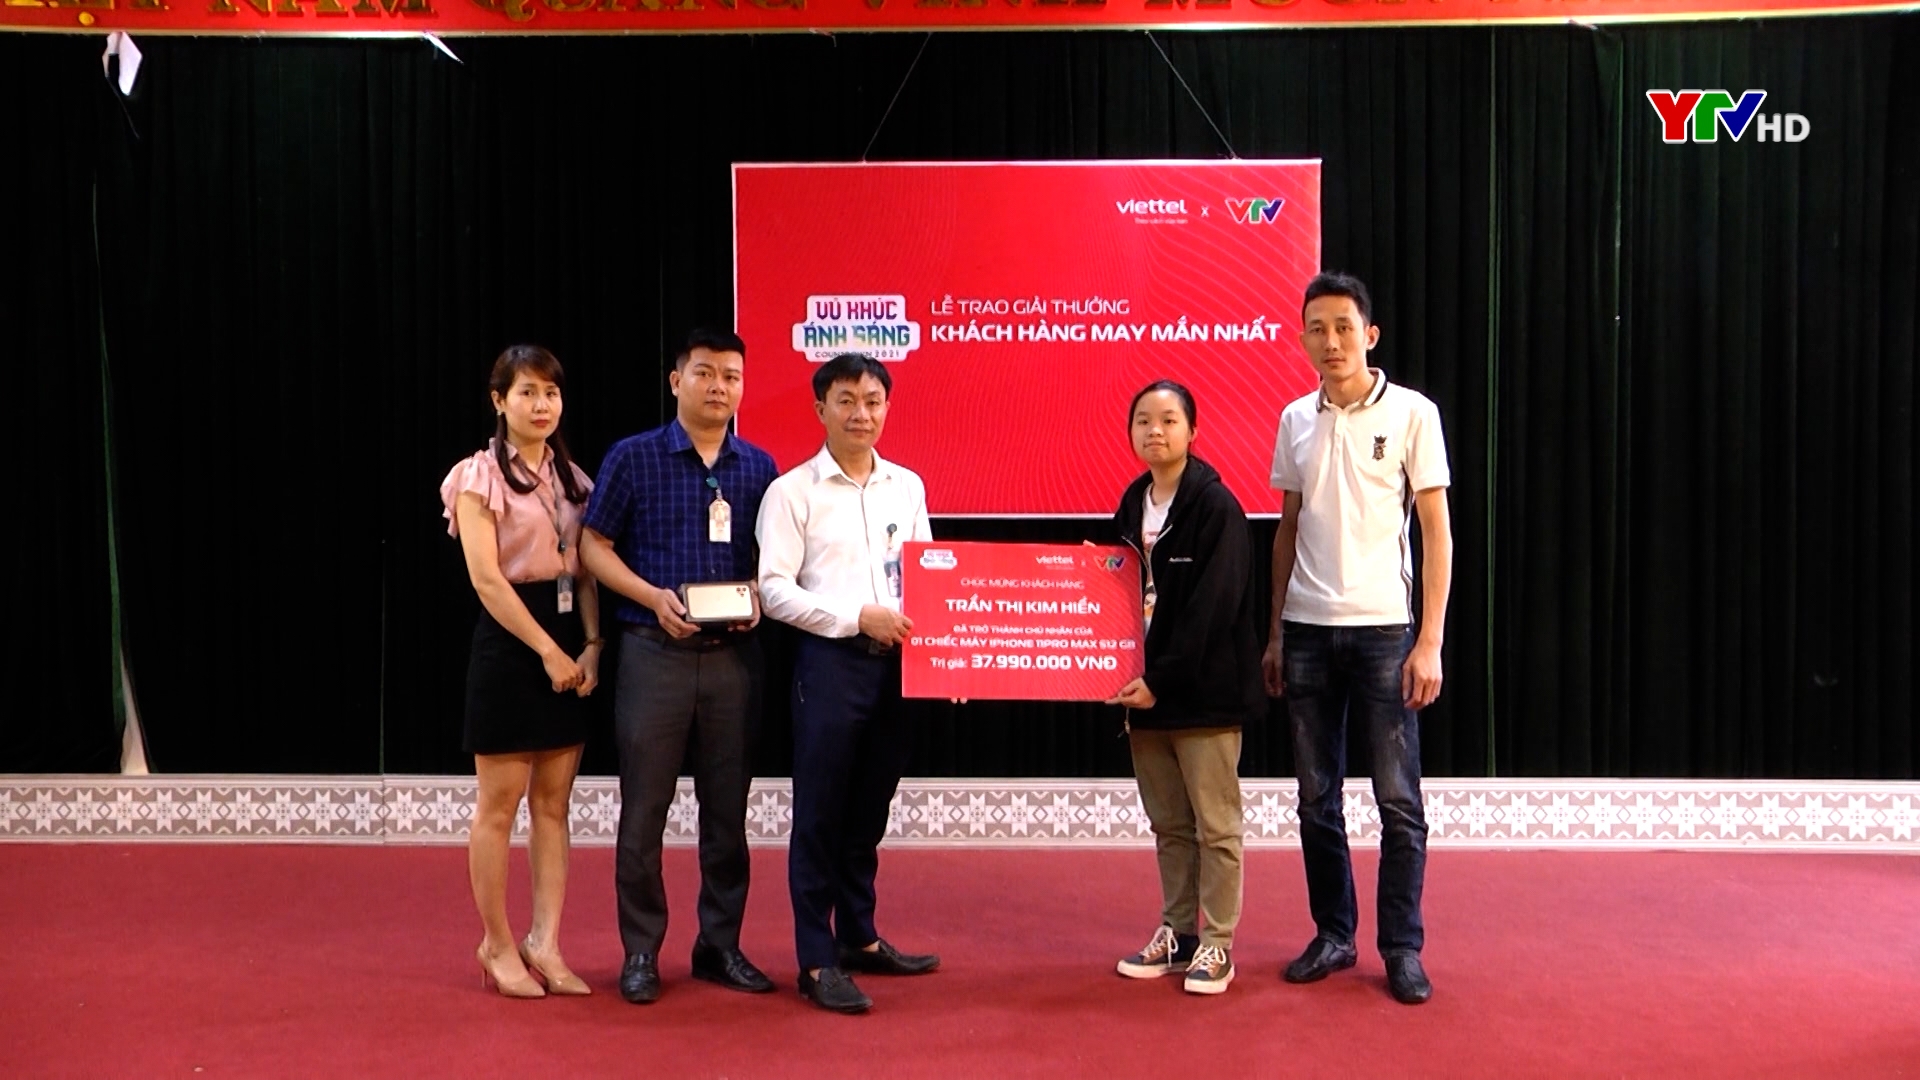 Chi nhánh Viettel Yên Bái trao thưởng khách hàng may mắn trúng thưởng